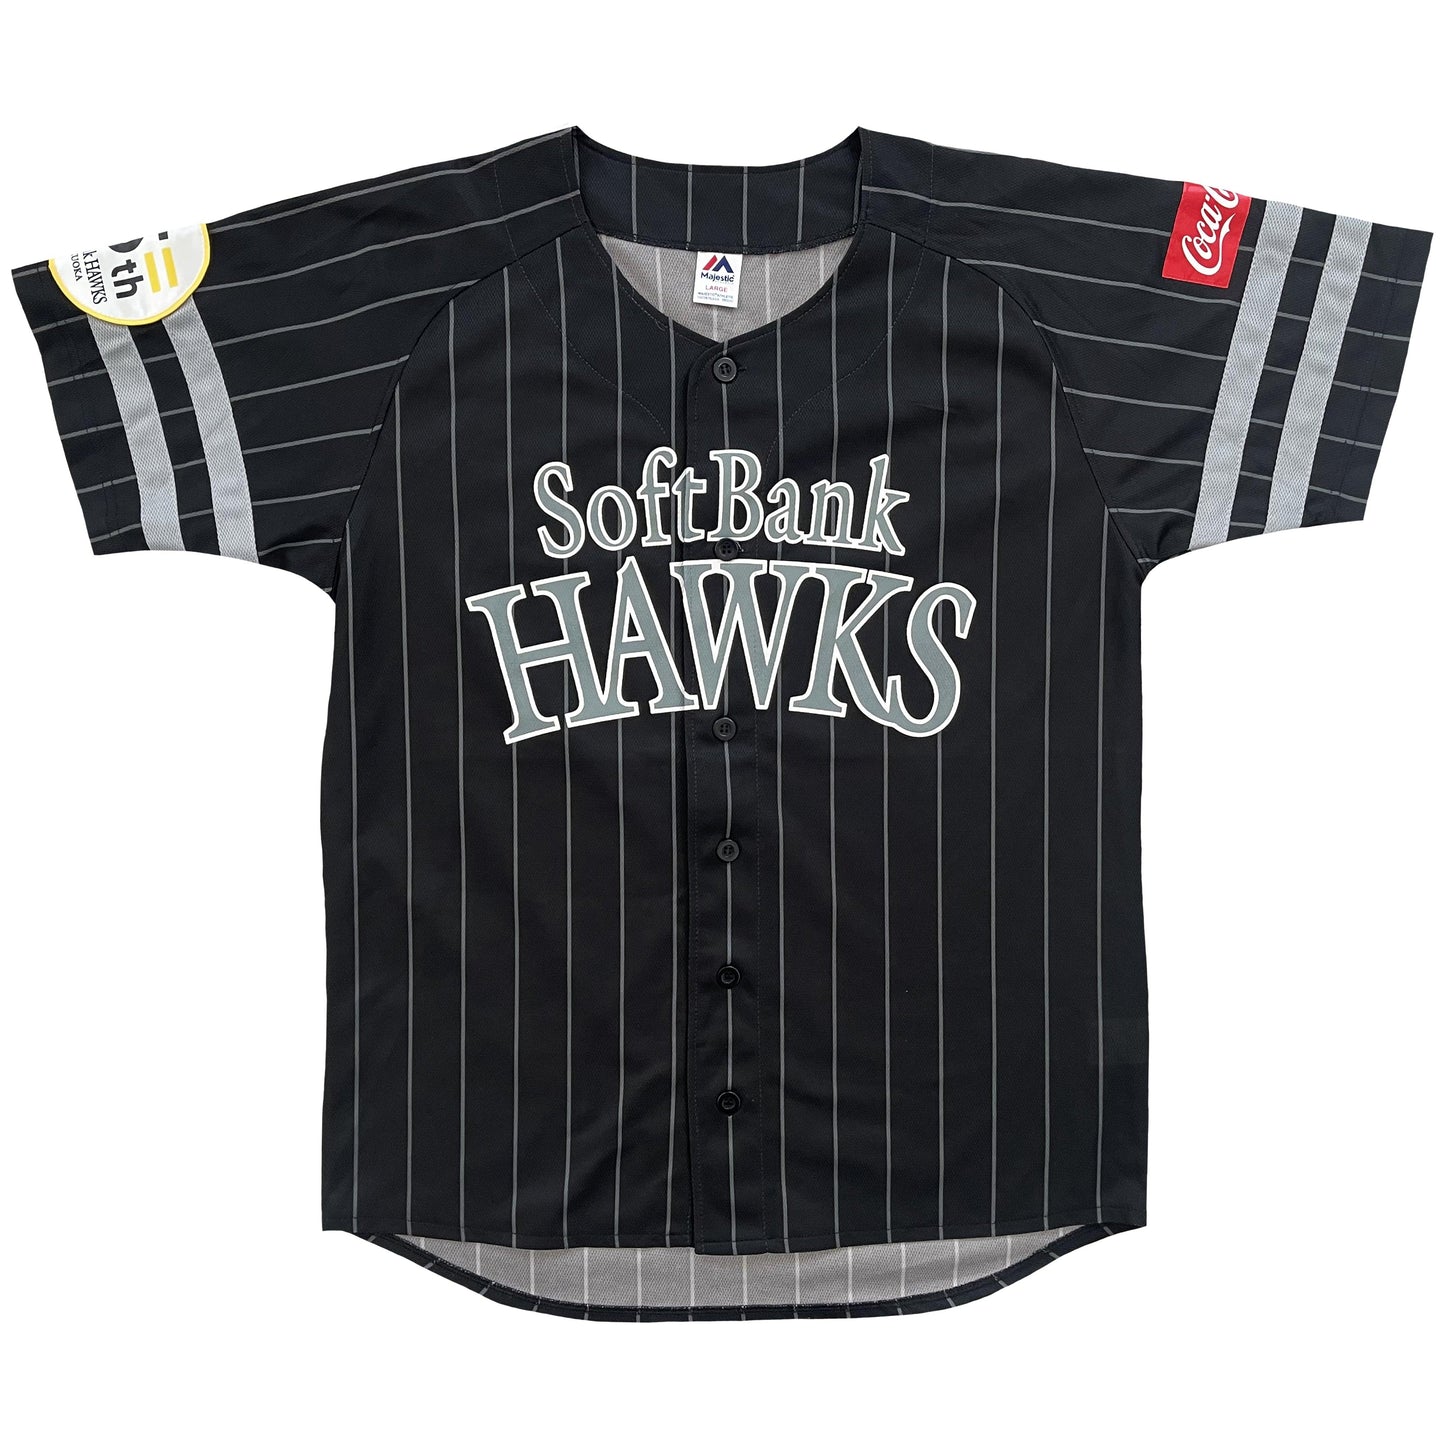 Japanese Baseball Jersey Softbank Hawks - L - Known Source